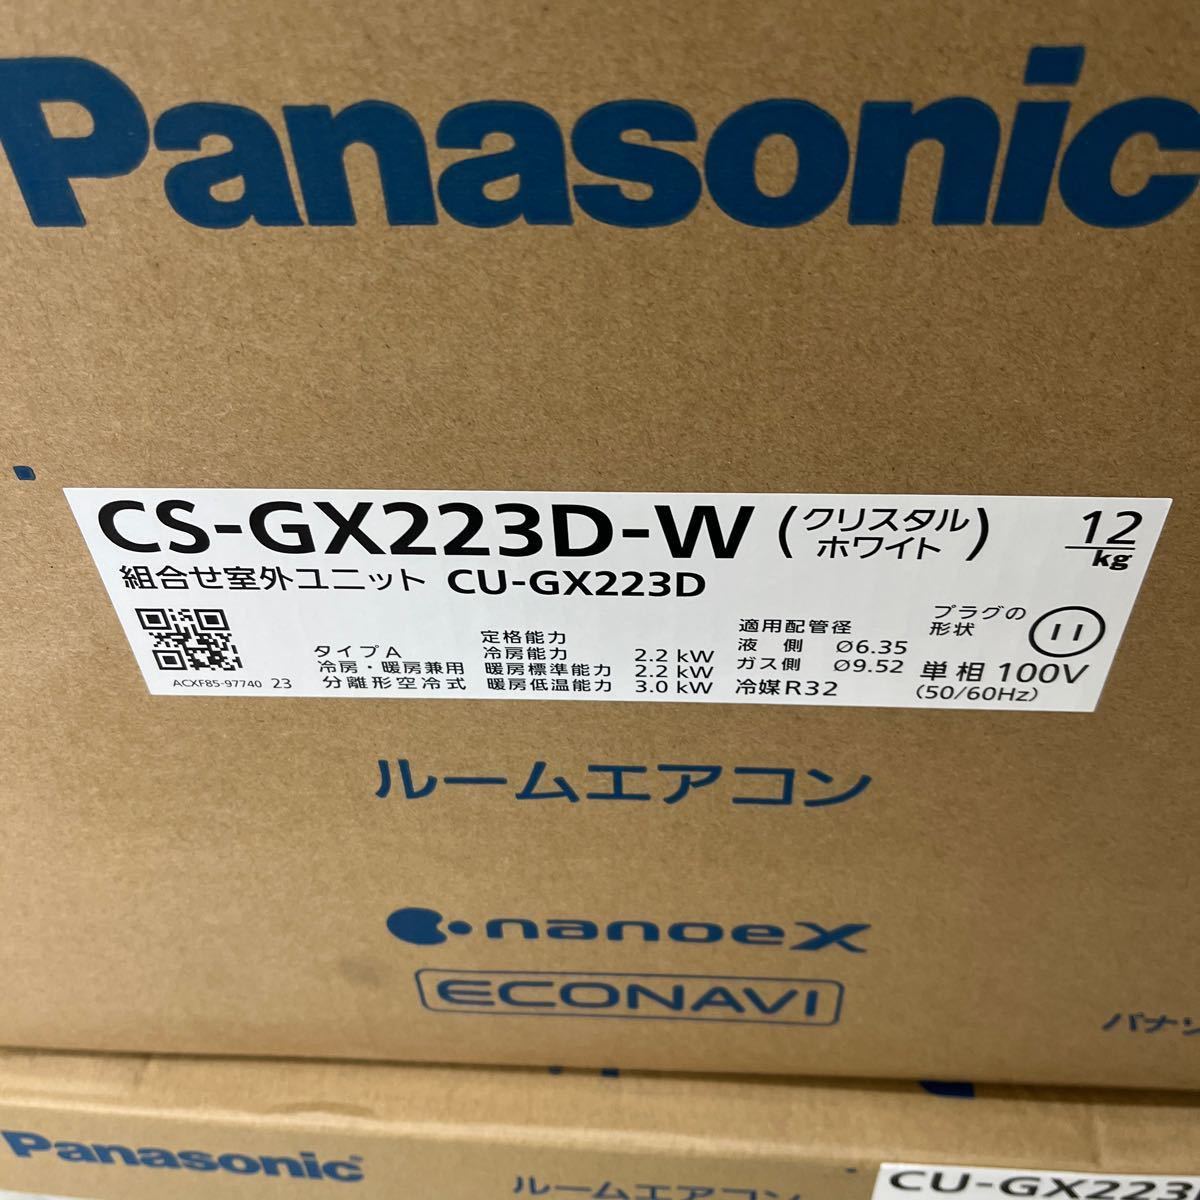 新品 エアコン Panasonic 上位機種 保証有 CS-GX223D エオリア 6畳 100V 空気清掃 自動掃除 ナノイー スマホ連携_画像2